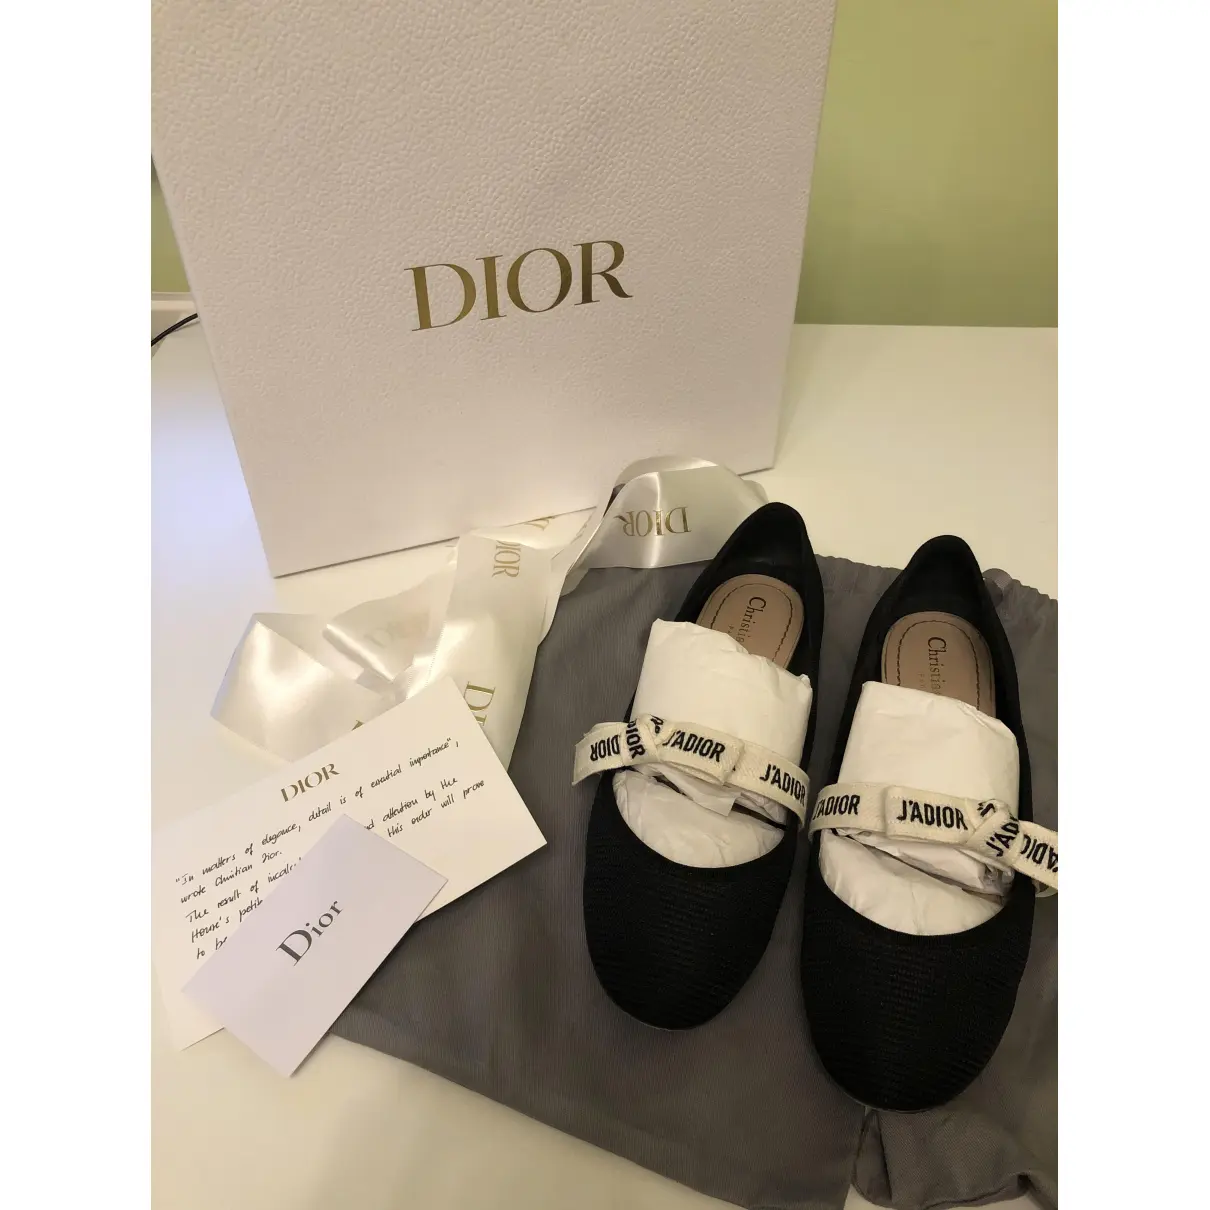 Buy Dior Miss J'adior cloth ballet flats online